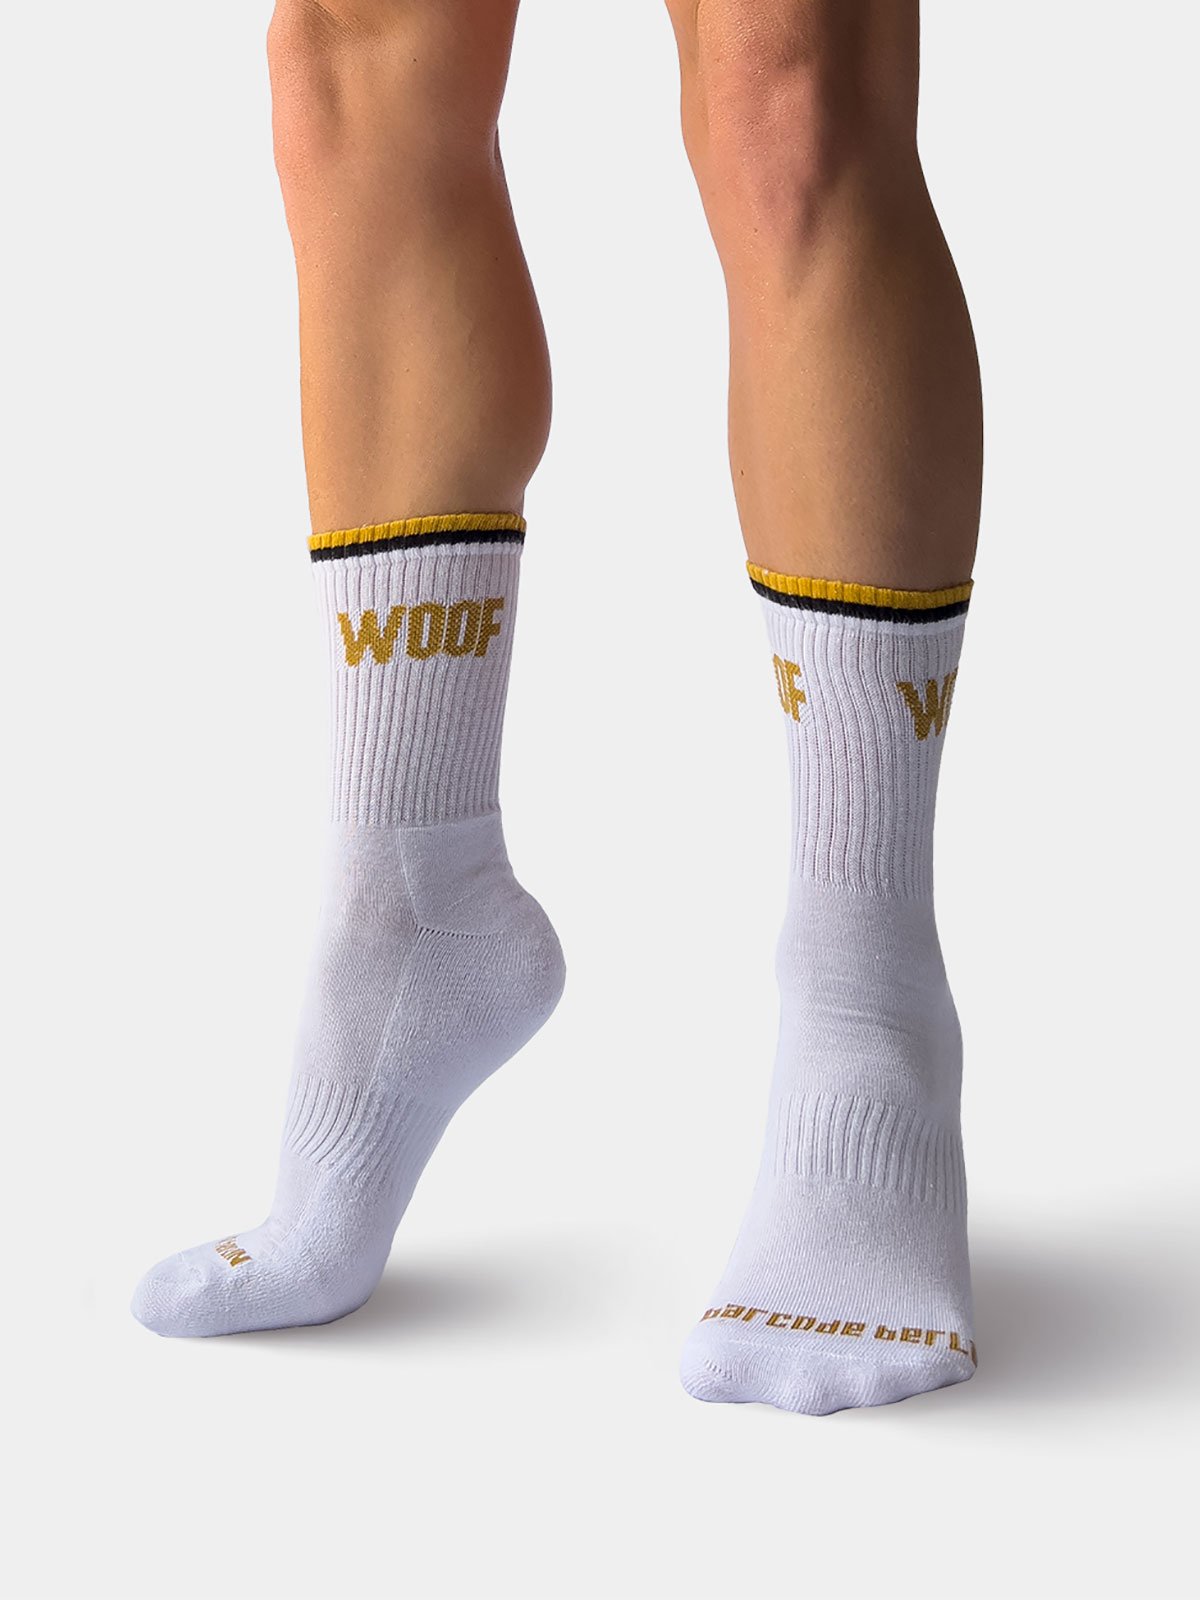 Fun Socks "Woof" | White/Gold/Black